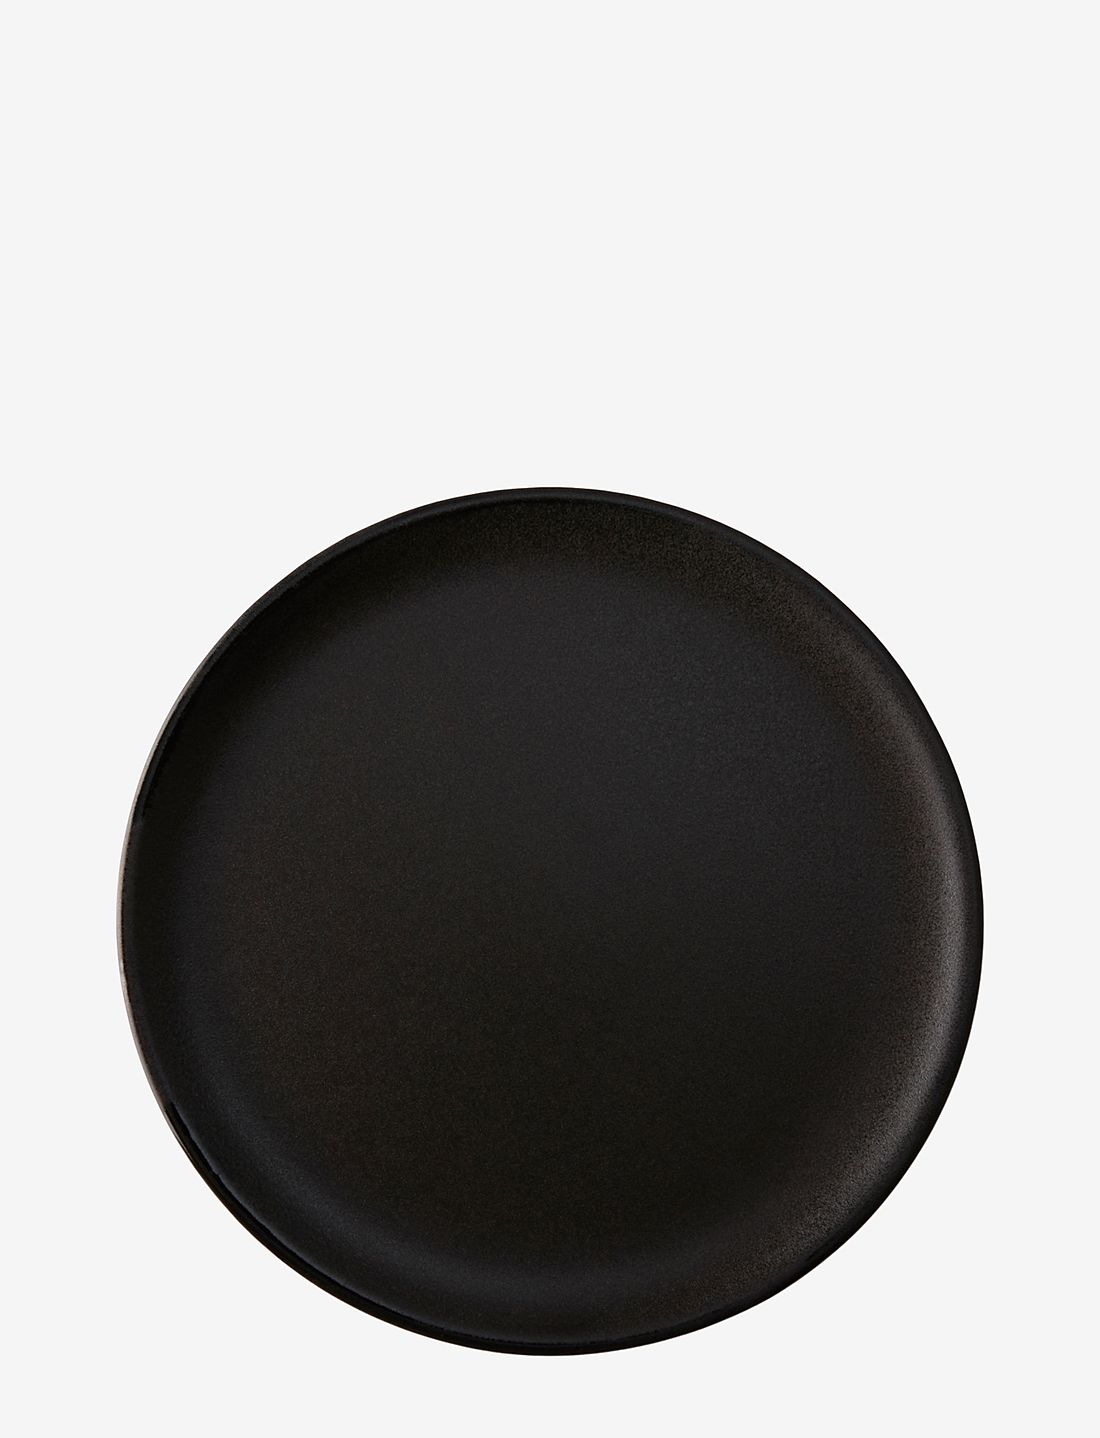 Aida Raw Titanium Black - Dinner plates